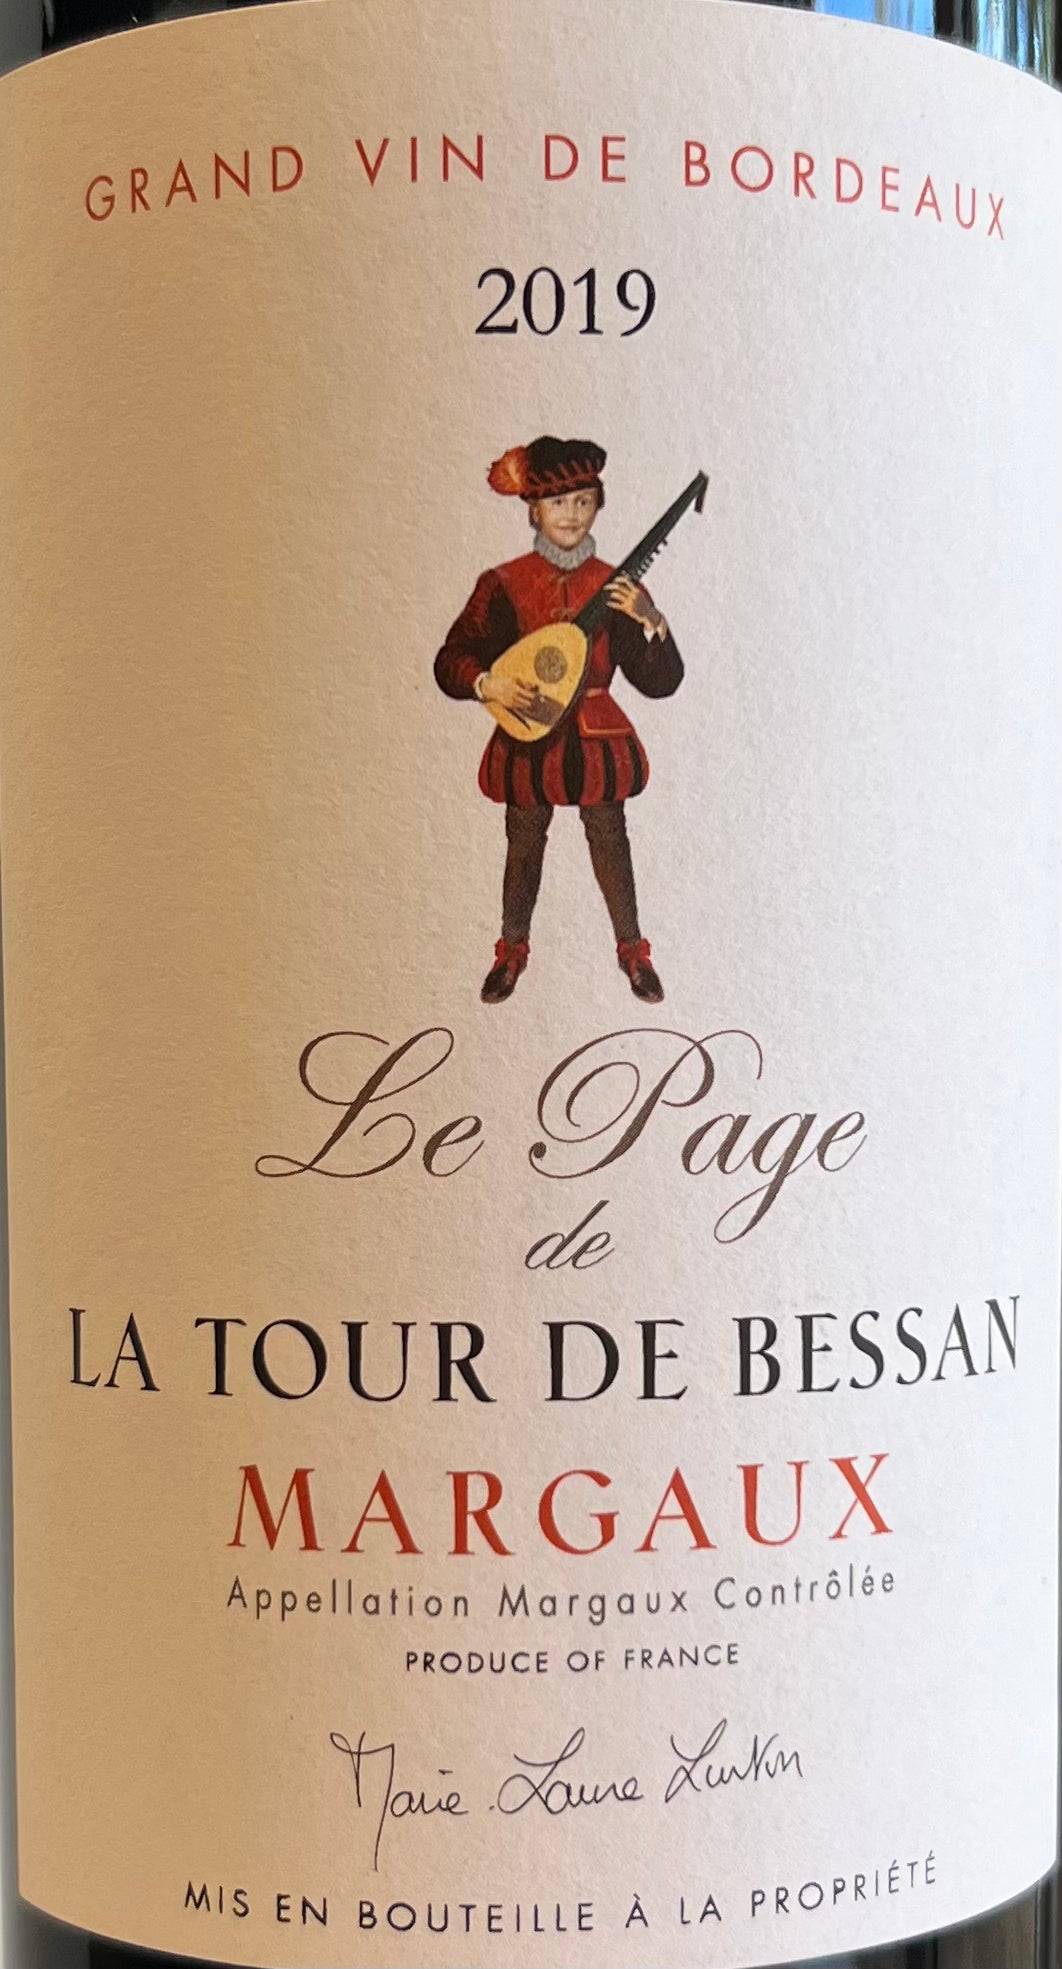 Le Page de La Tour de Bessan - Margaux